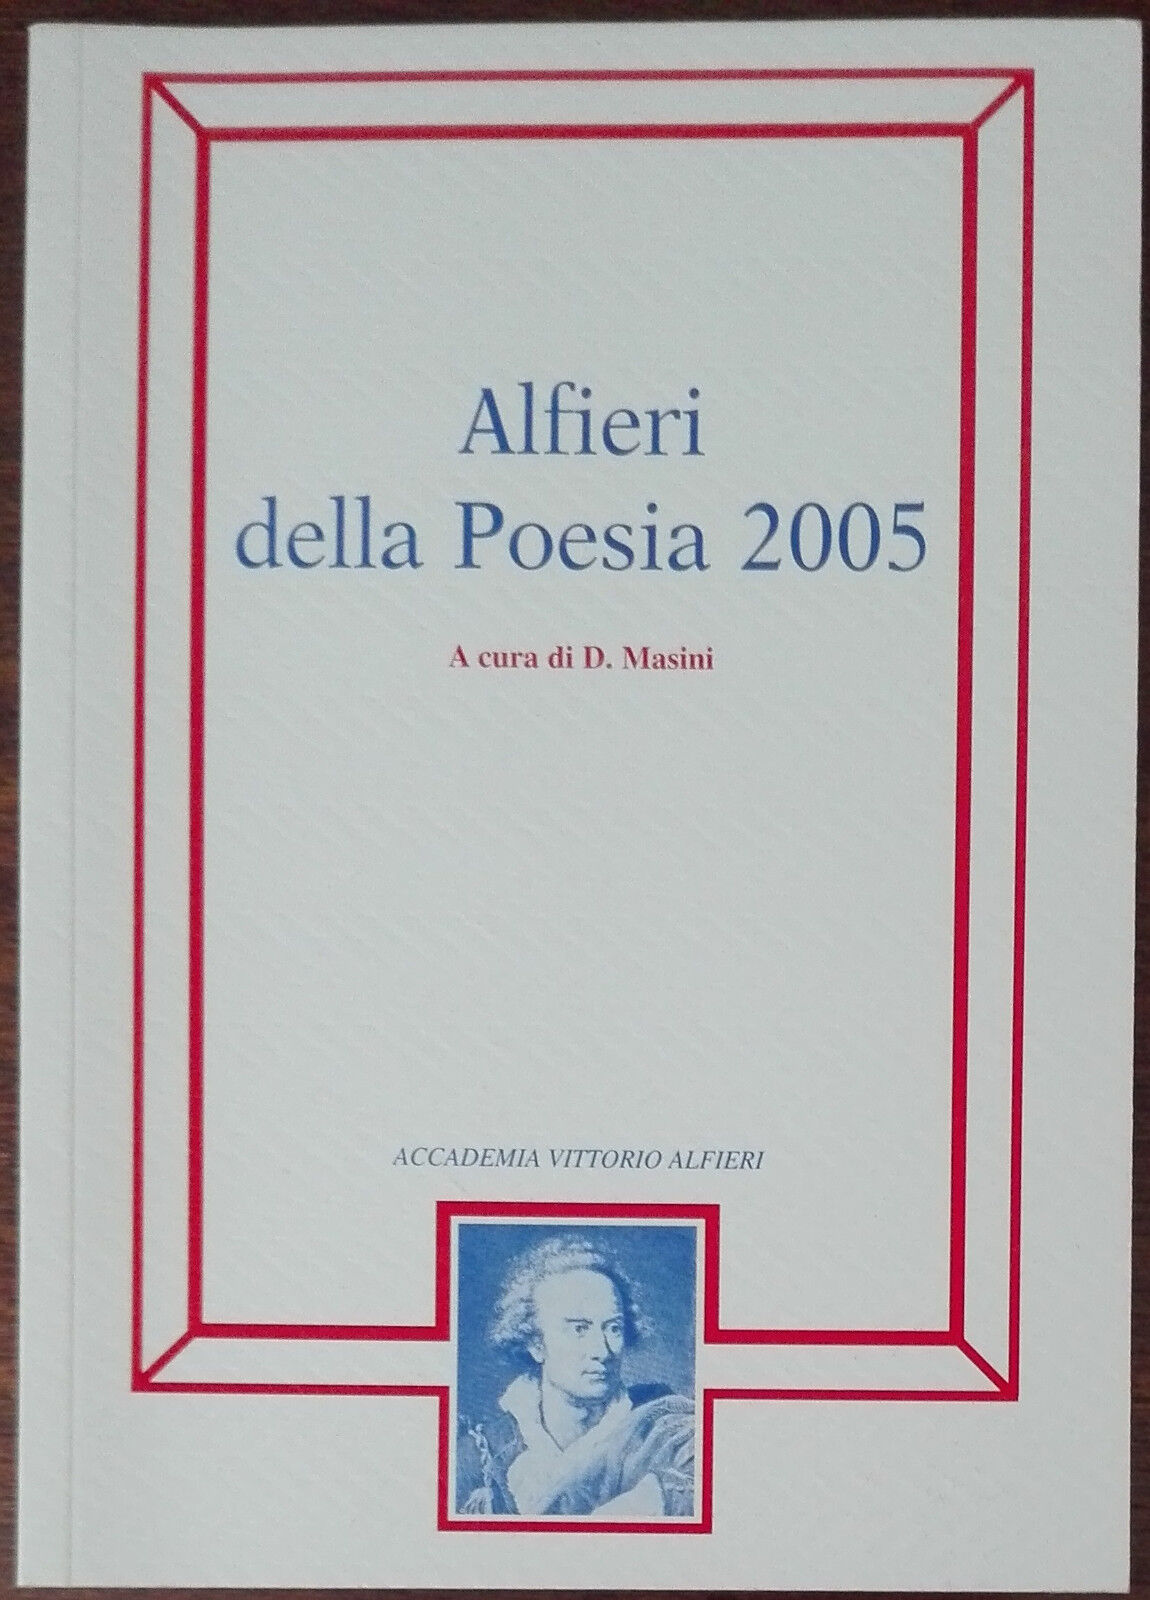 Alfieri della Poesia 2005 - D. Masini - Accademia Vittorio Alfieri, 2005 - A